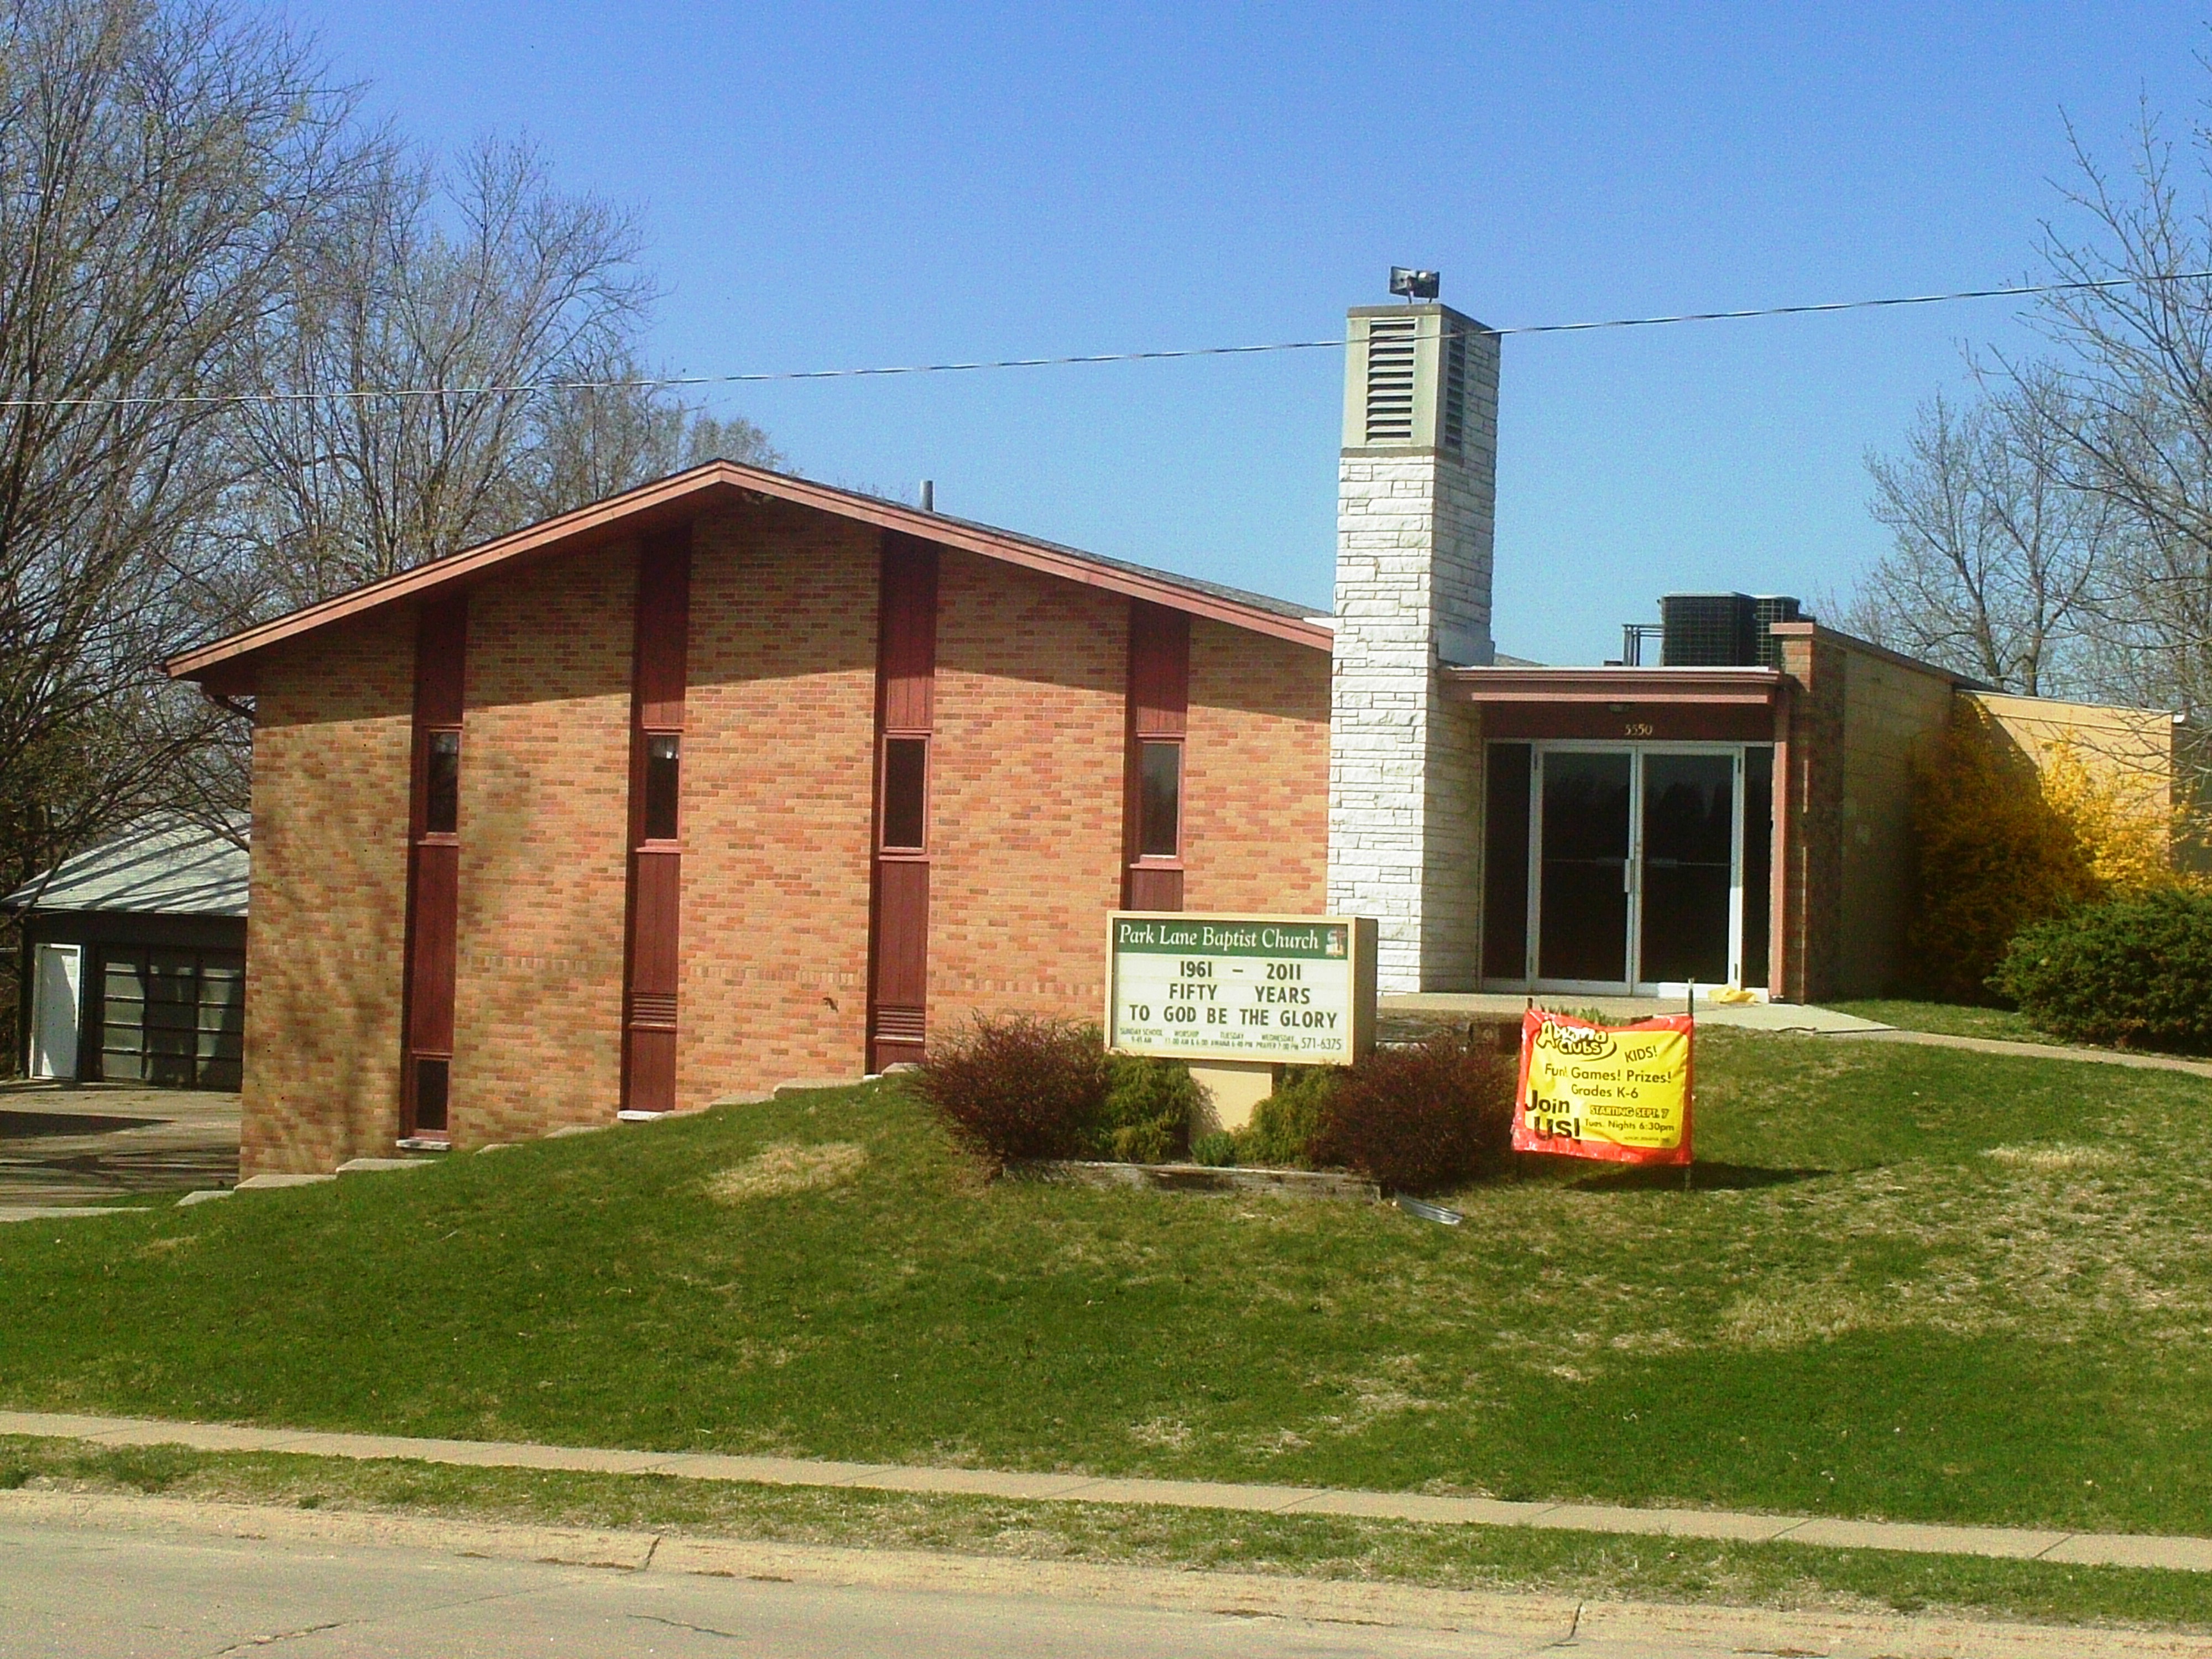 Park Lane Baptist Church | 5550 N 60th Ave, Omaha, NE, 68104 | +1 (402) 571-6375